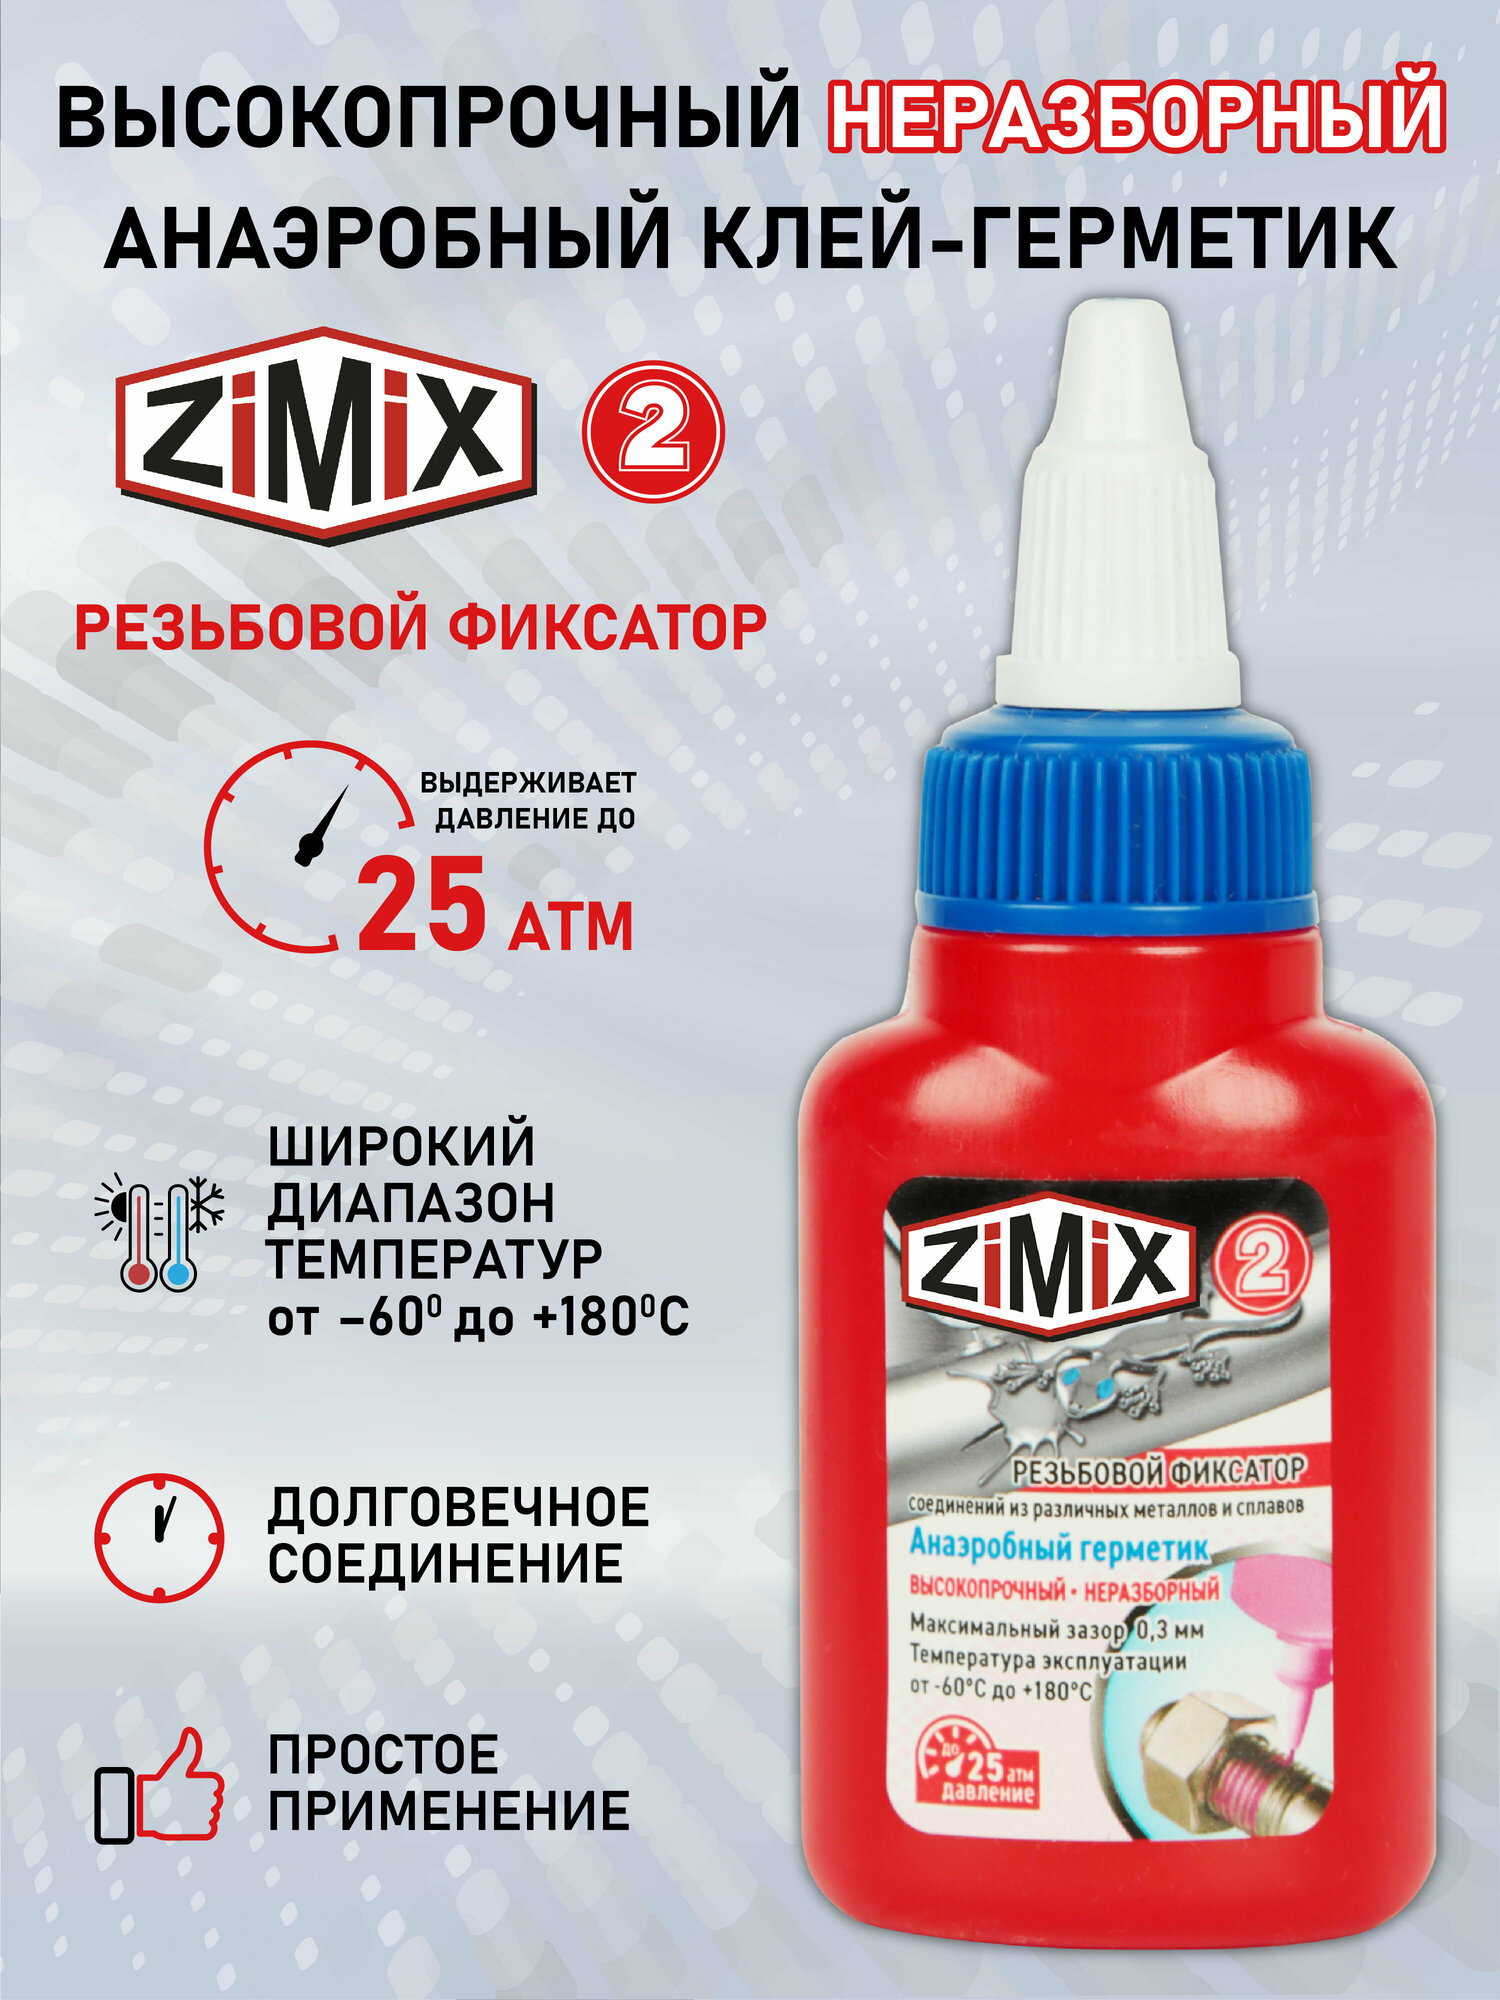 ZIMIX герметик